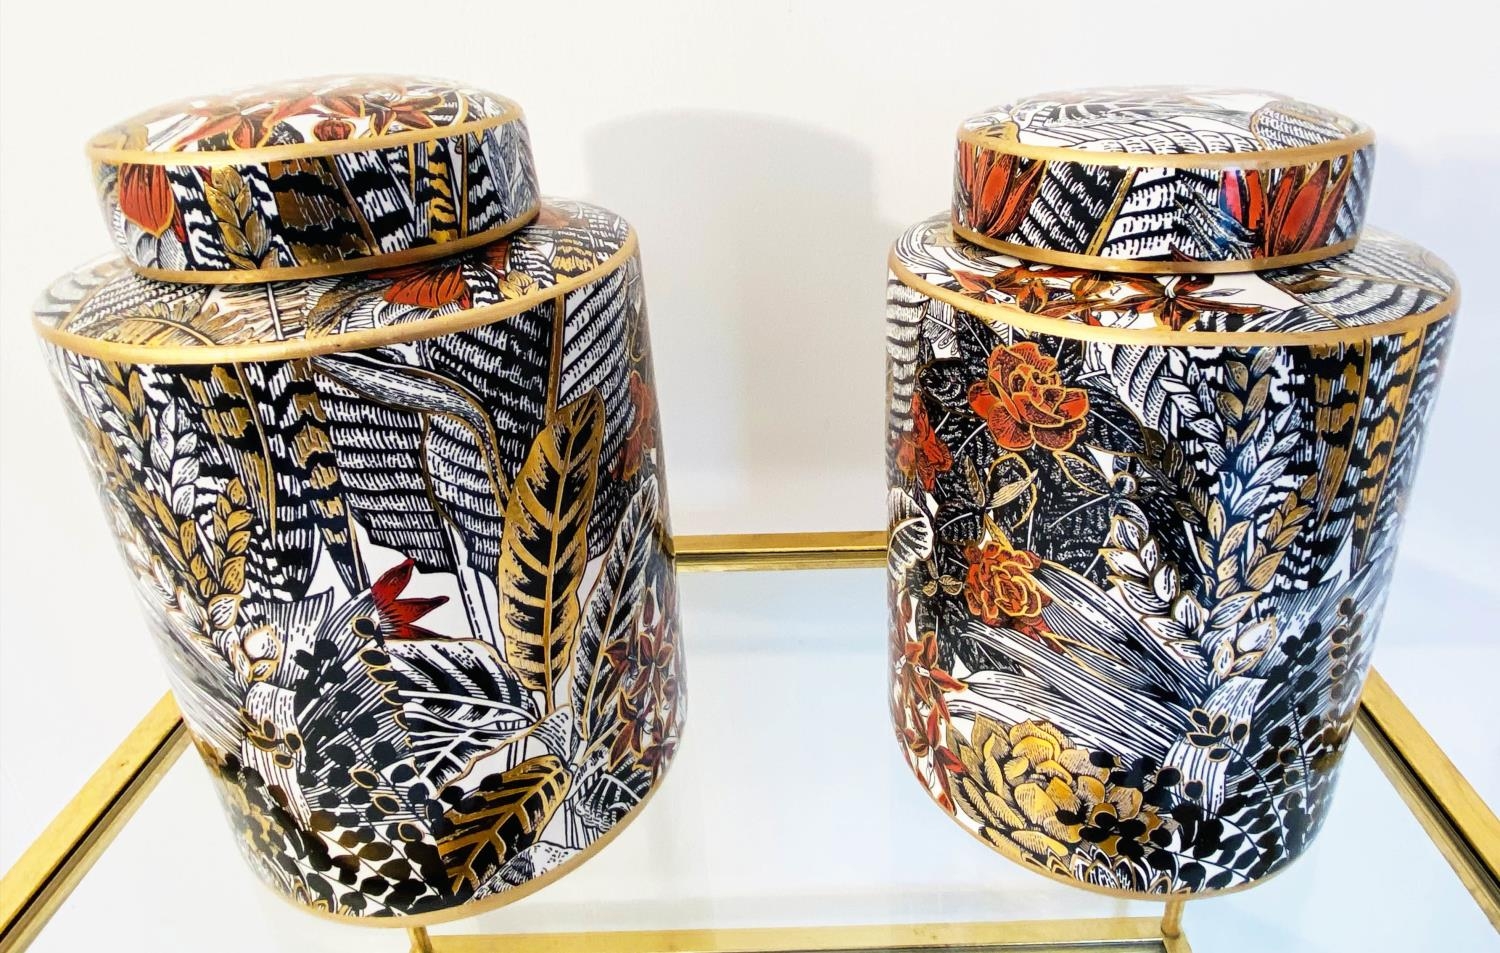 GINGER JARS, 30cm H x 20cm diam., a pair, glazed ceramic with foliate print design. (2) - Image 5 of 5